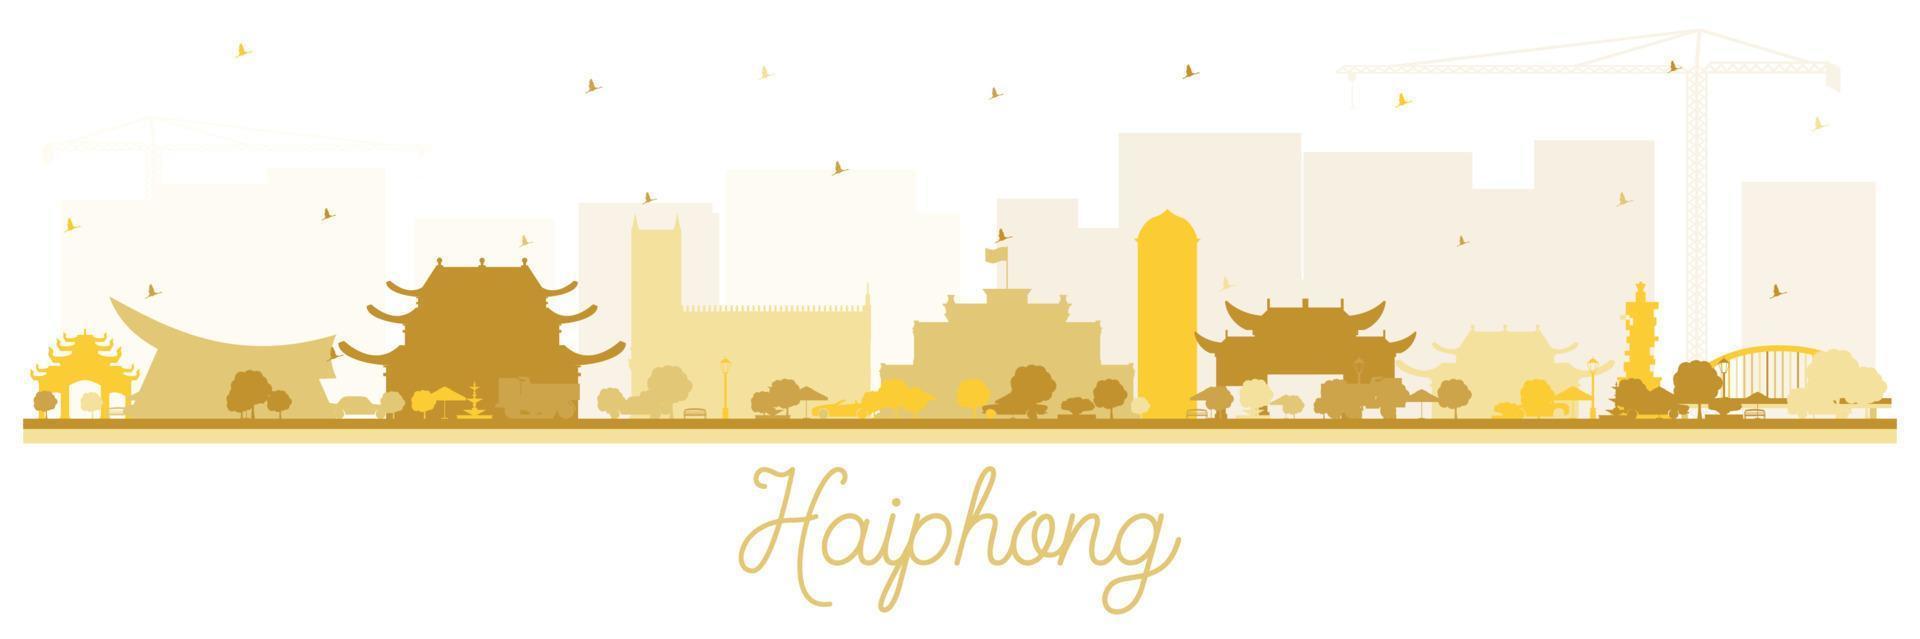 silueta del horizonte de la ciudad de haiphong vietnam con edificios dorados aislados en blanco. vector